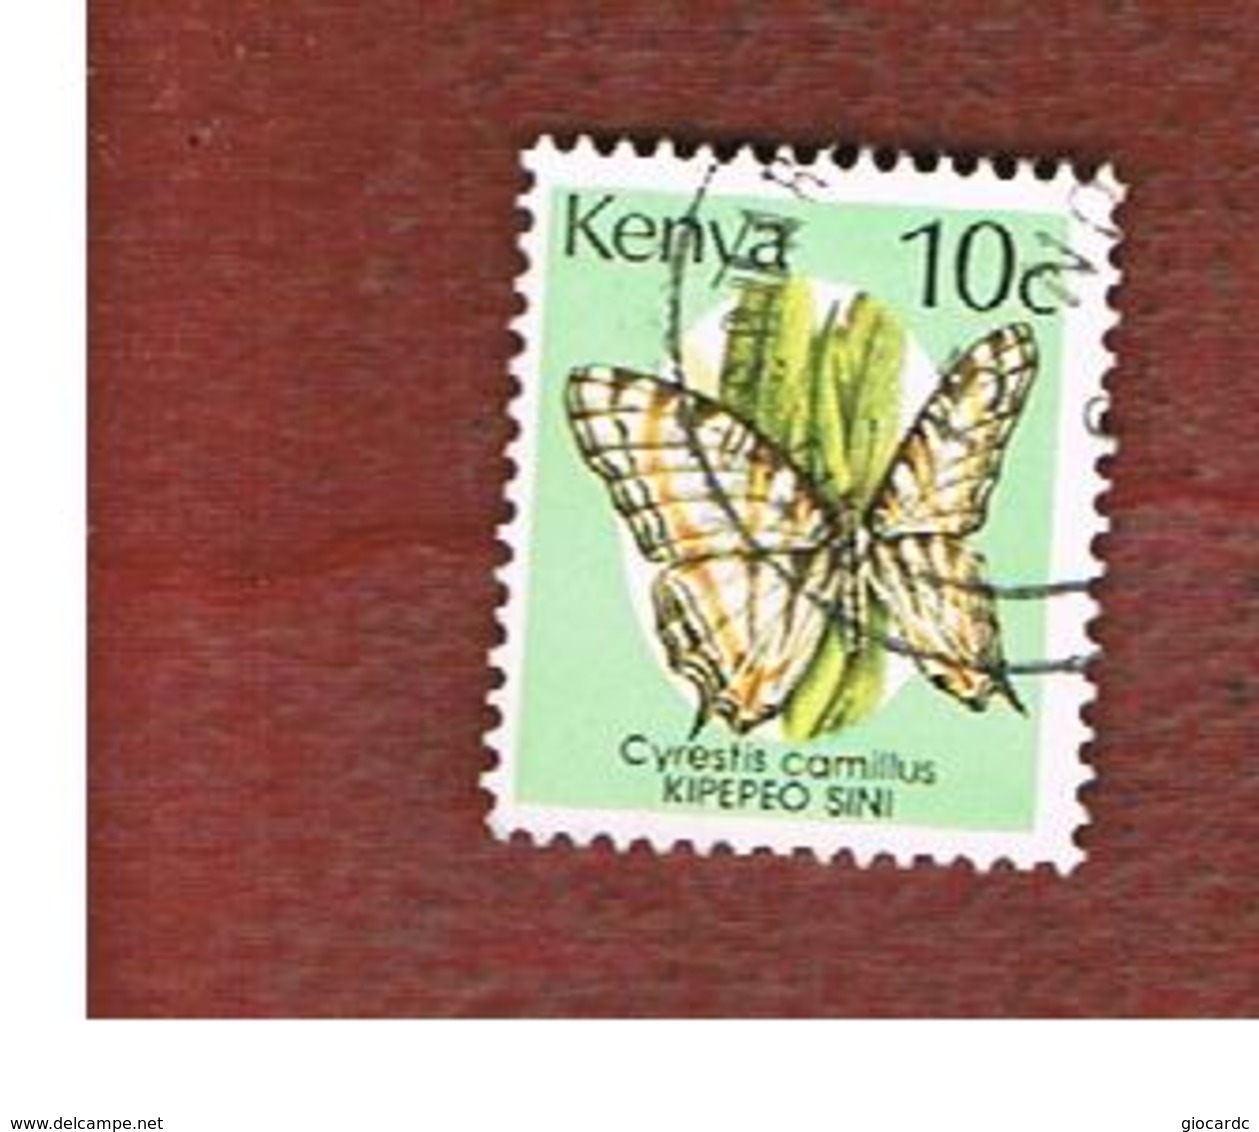 KENYA  -  SG 434a  -   1989  BUTTERFLIES:  CYRESTIS CAMILLUS -  USED° - Kenia (1963-...)